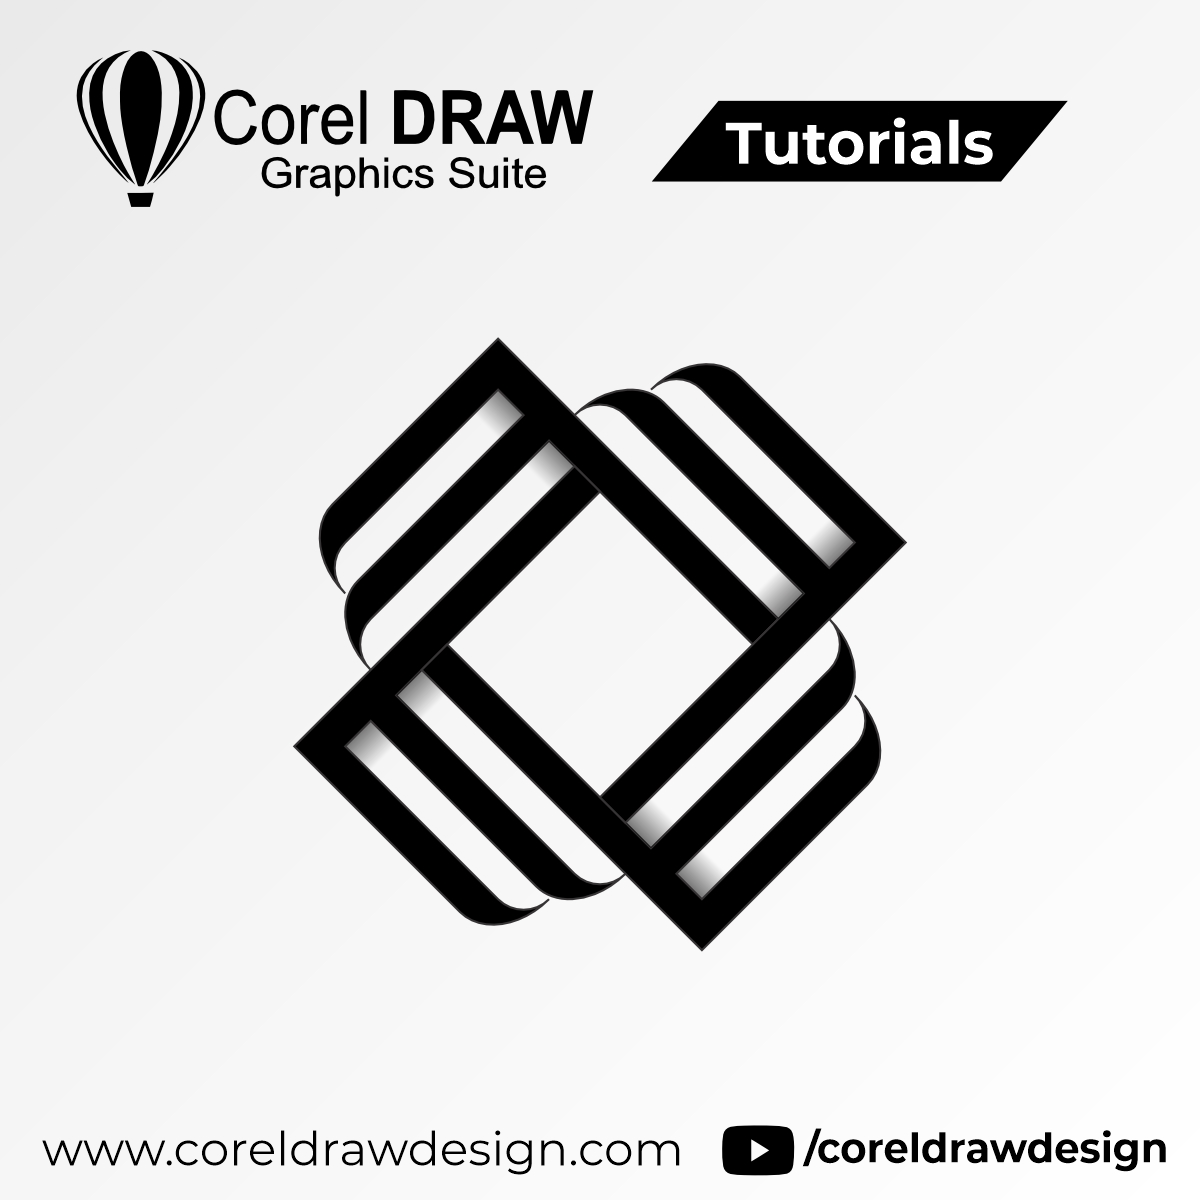 Design Vector Art Corel Draw Community-saigonsouth.com.vn